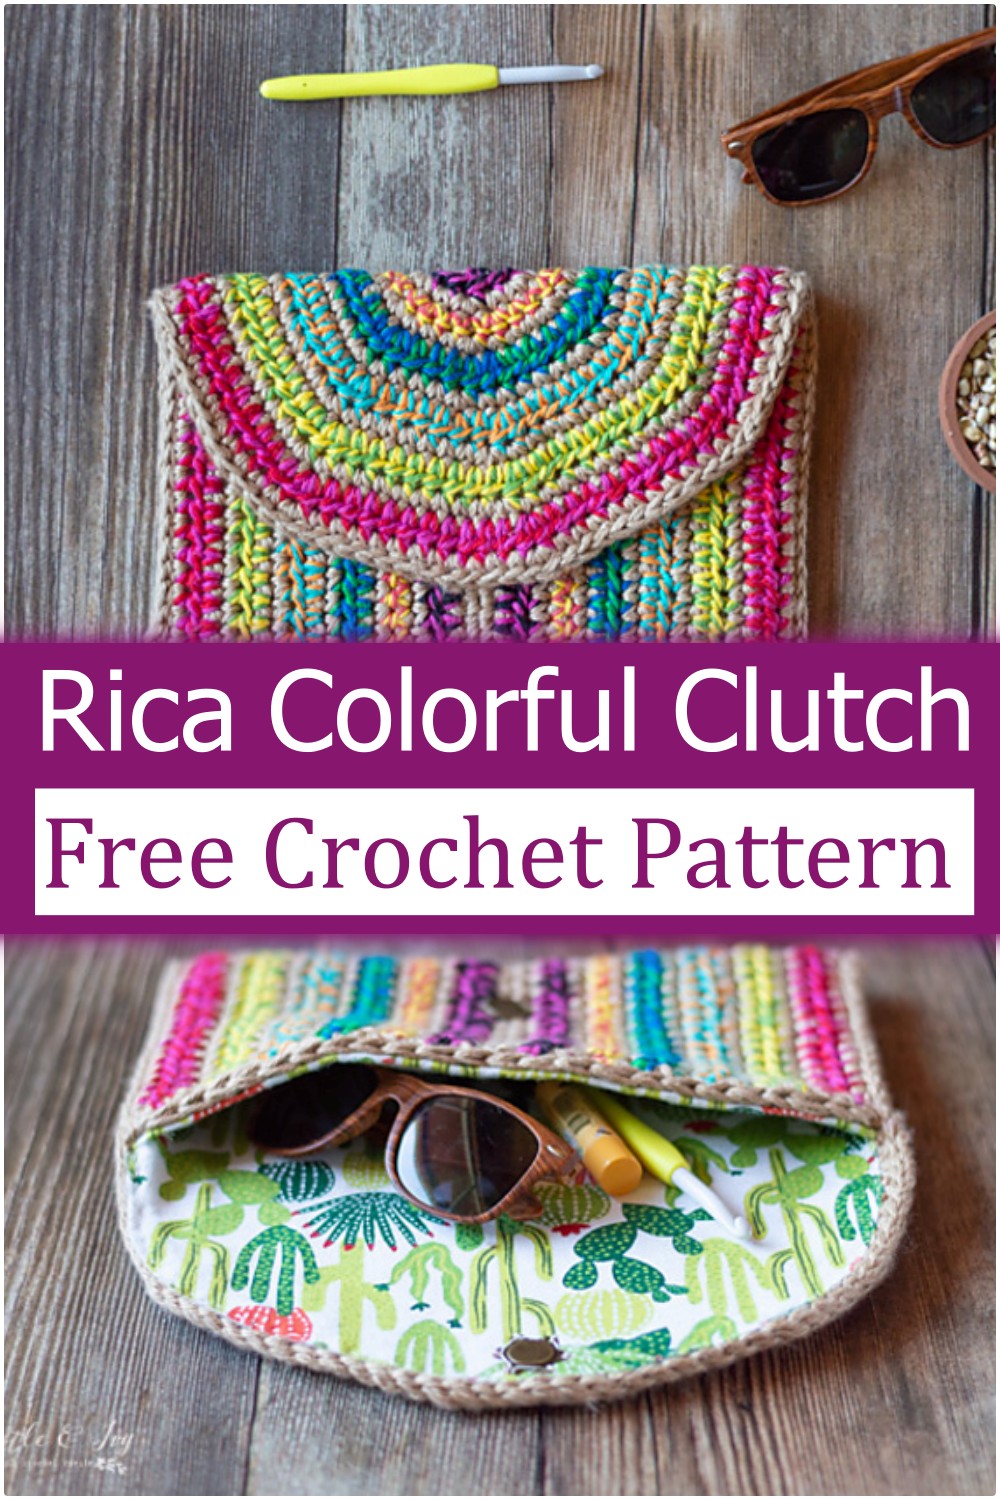 Rica Colorful Clutch